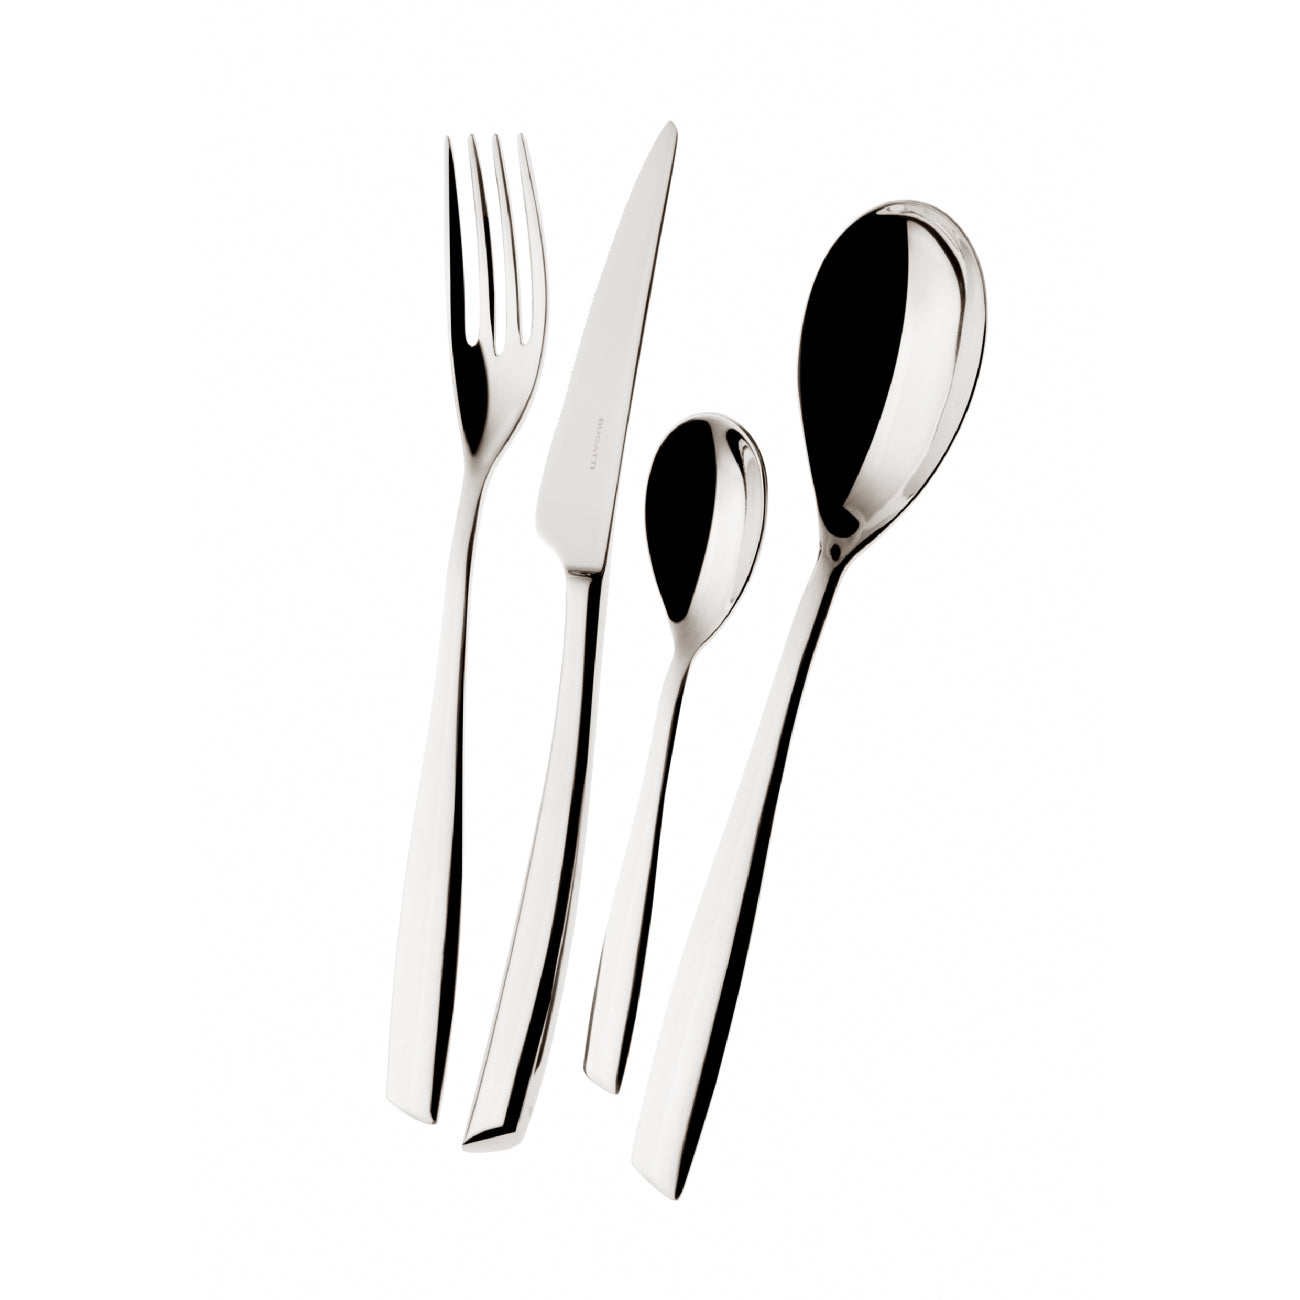 BUGATTI, Riviera, 75-piece cutlery set in 18/10 stainless steel